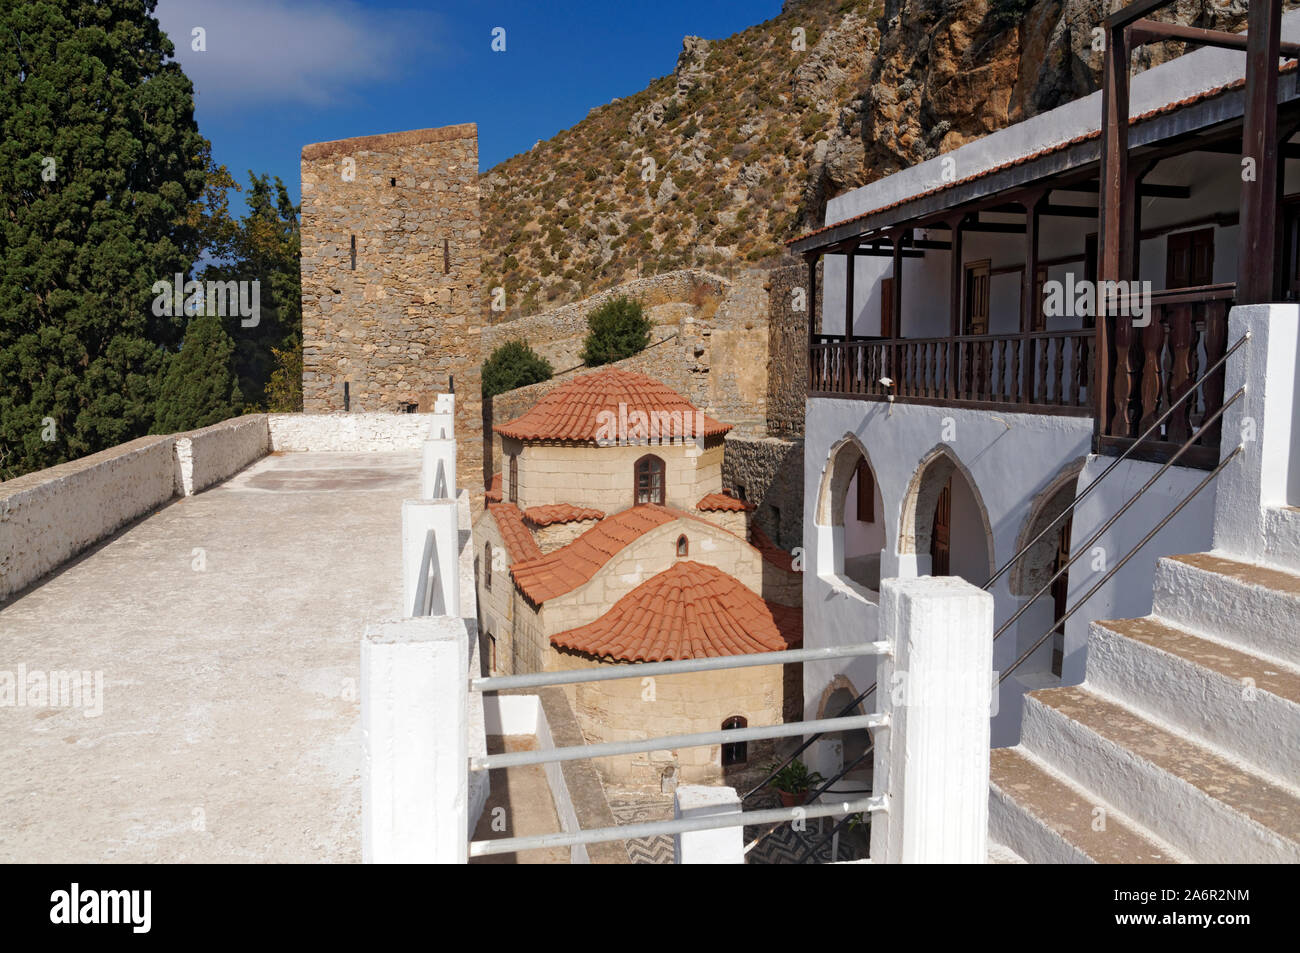 Kloster Agios Panteleimonas, Tilos, Dodecanese Inseln, südliche Ägäis, Griechenland. Stockfoto